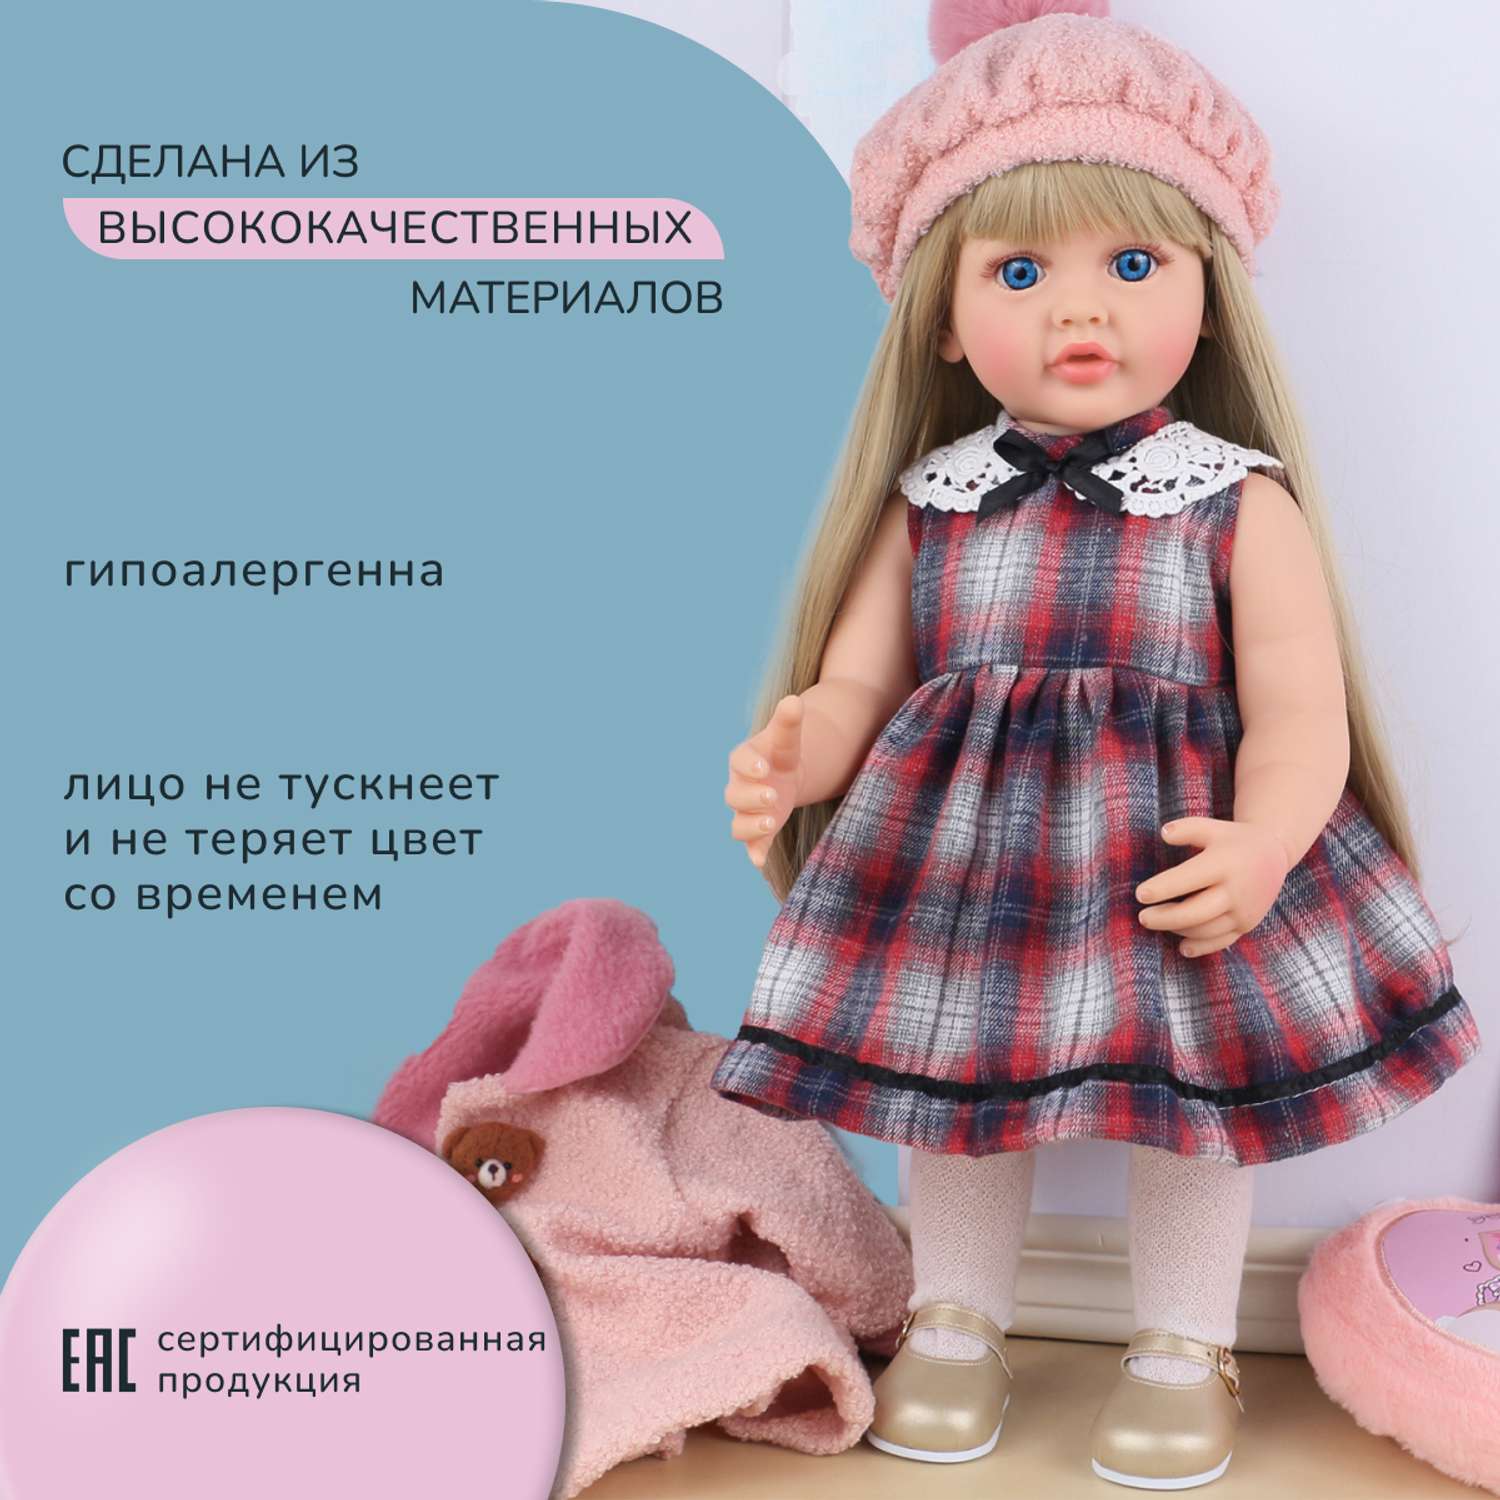 Кукла Реборн QA BABY Марианна большая пупс набор игрушки для девочки 55 см 5553 - фото 8